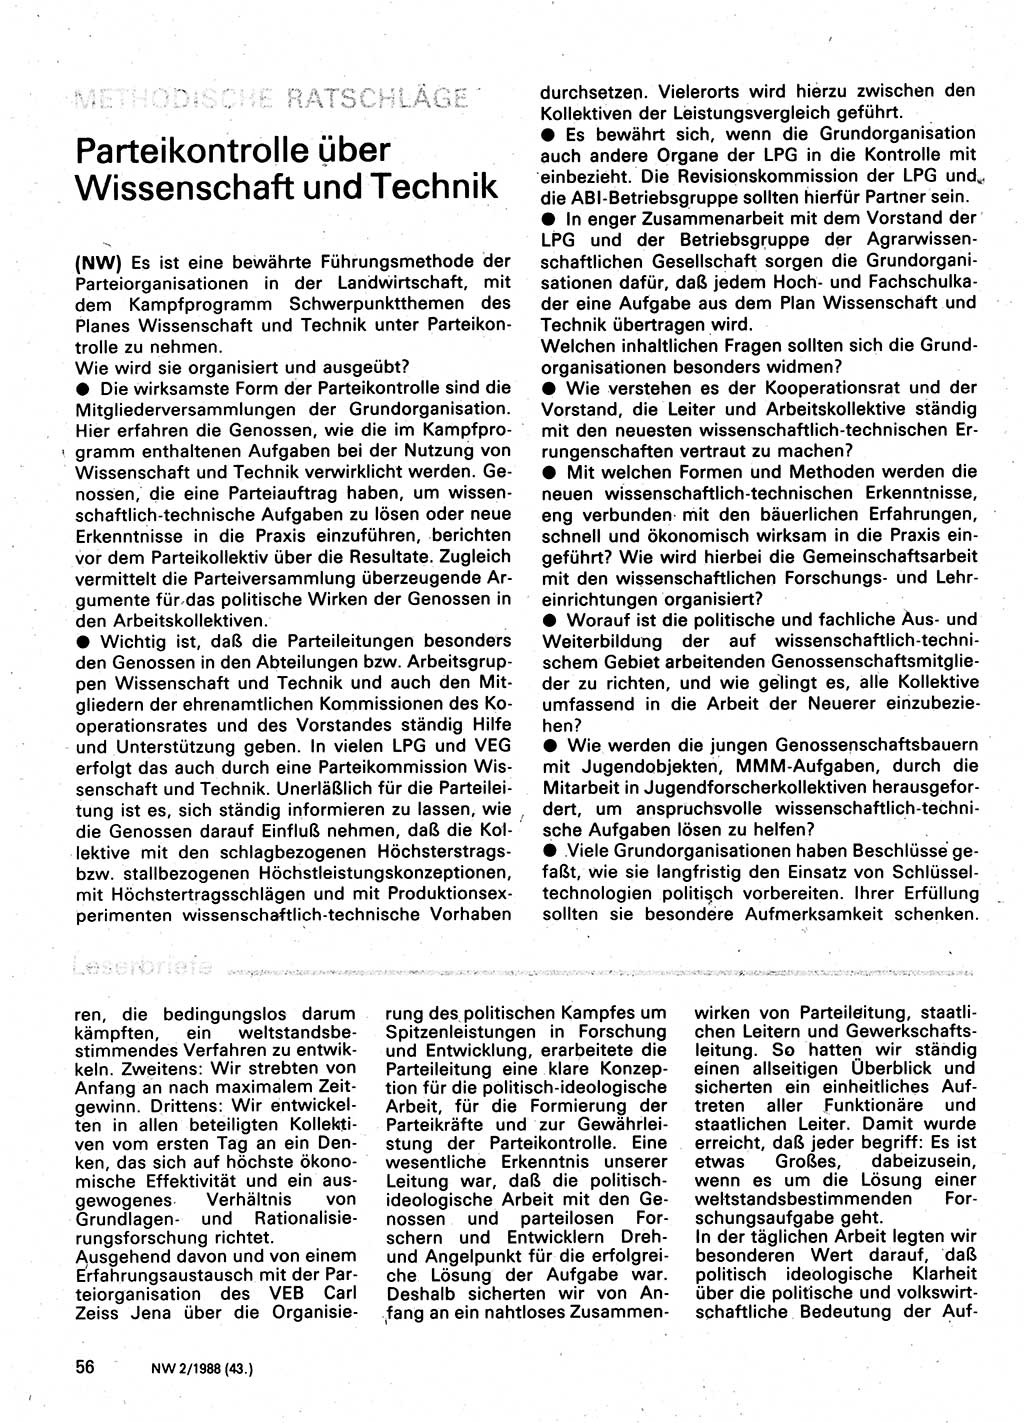 Neuer Weg (NW), Organ des Zentralkomitees (ZK) der SED (Sozialistische Einheitspartei Deutschlands) für Fragen des Parteilebens, 43. Jahrgang [Deutsche Demokratische Republik (DDR)] 1988, Seite 56 (NW ZK SED DDR 1988, S. 56)